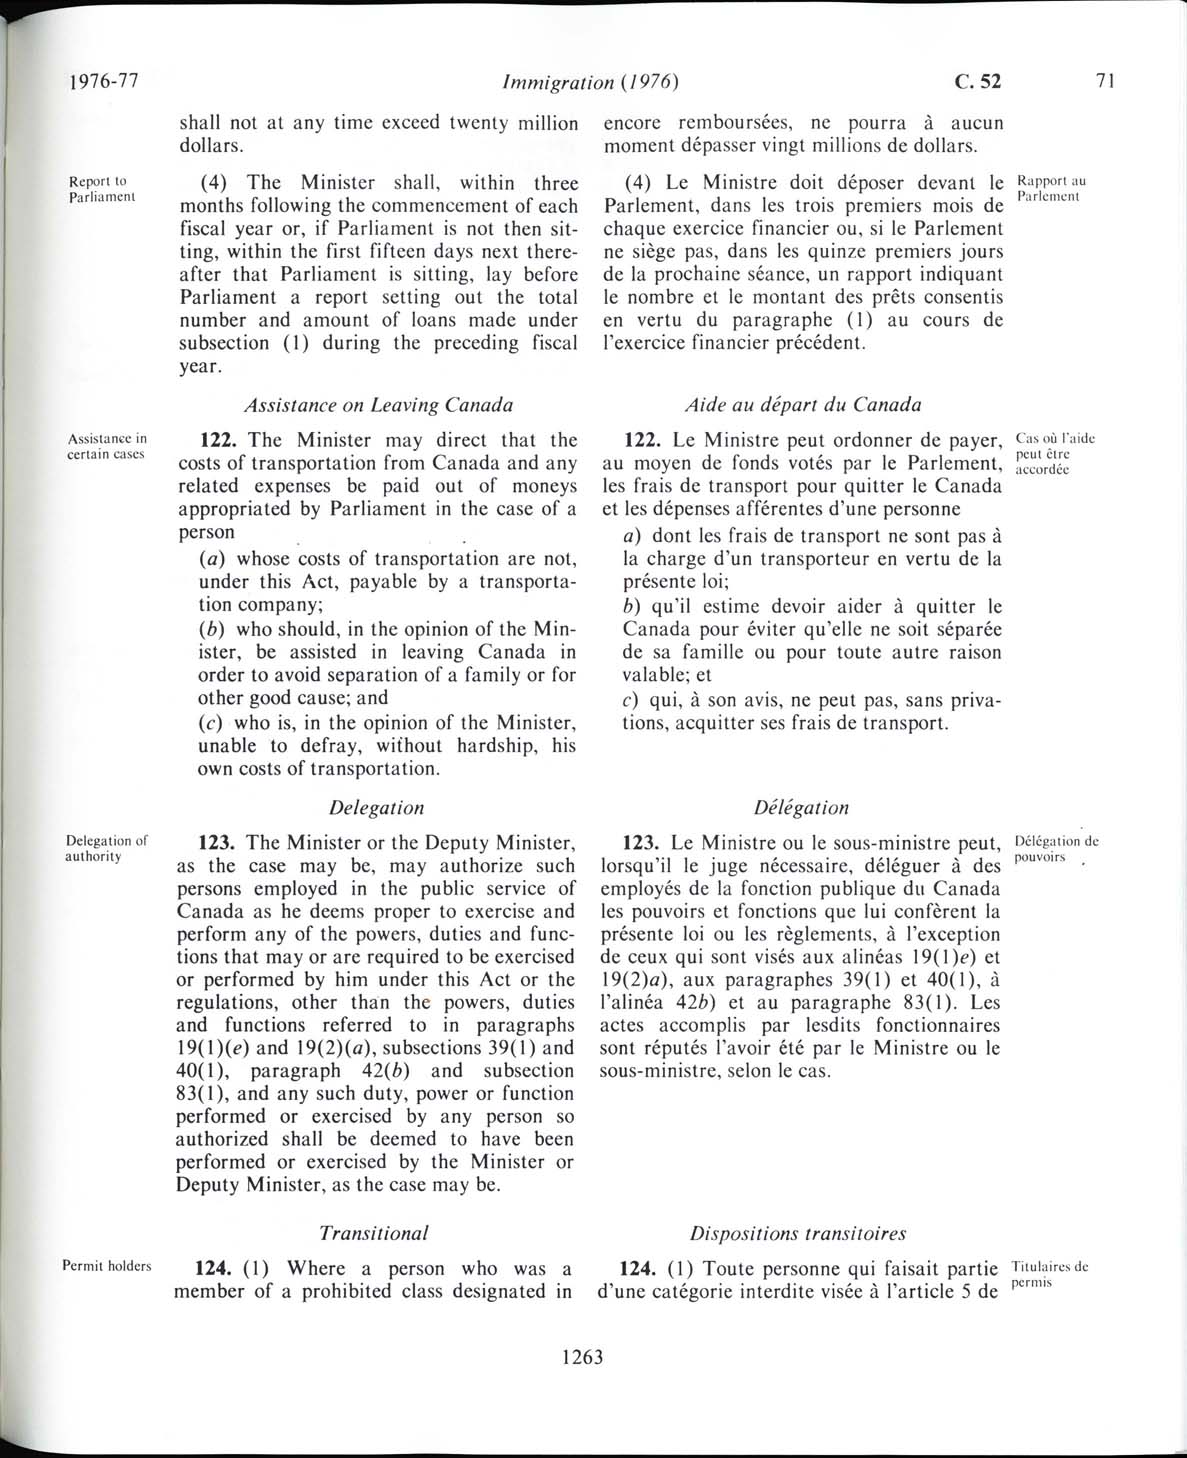 Page 1263 Loi sur l’immigration de 1976